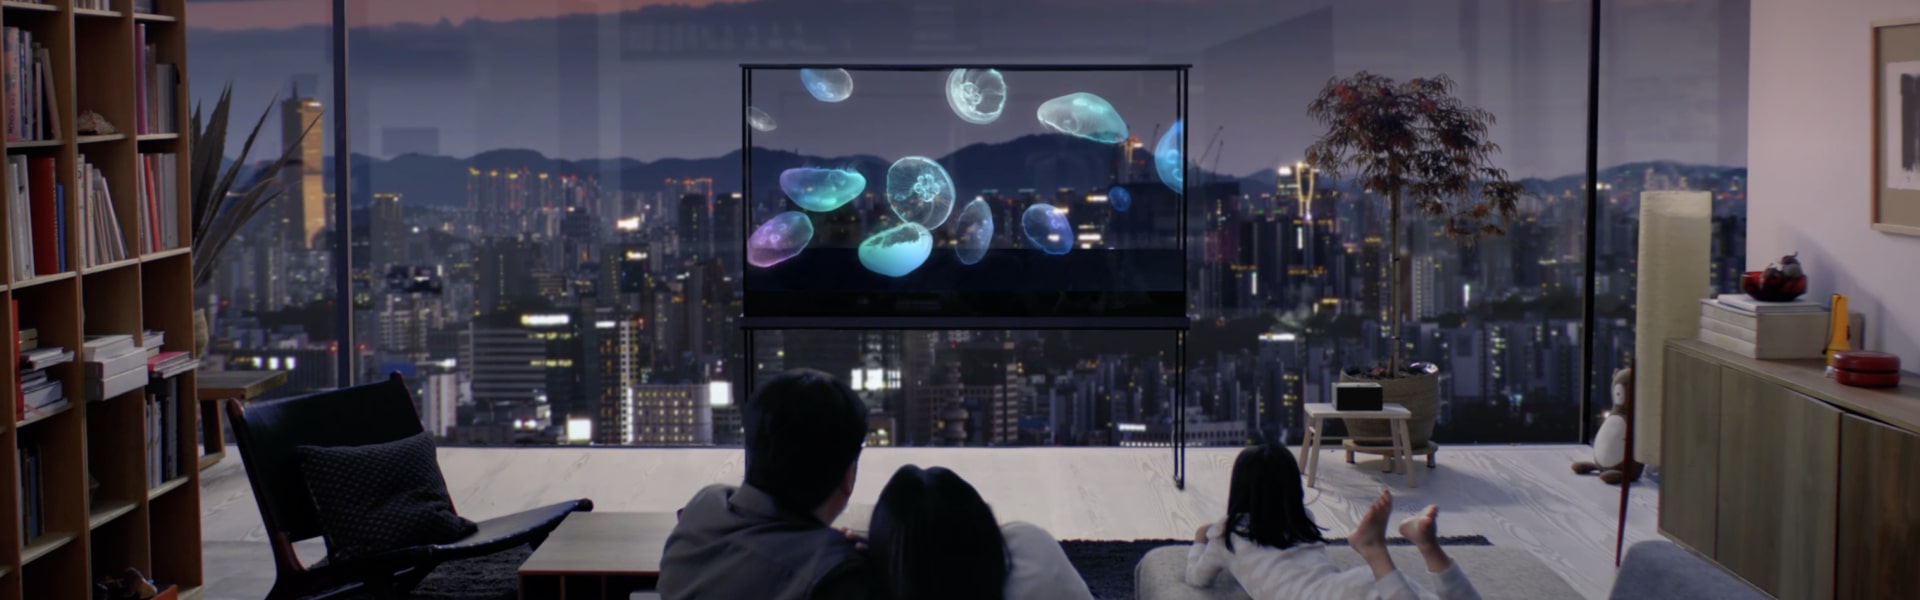 Une famille profite d’un LG Oled T sur lequel flotte une méduse, tandis que le paysage urbain brille à travers l’écran transparent.